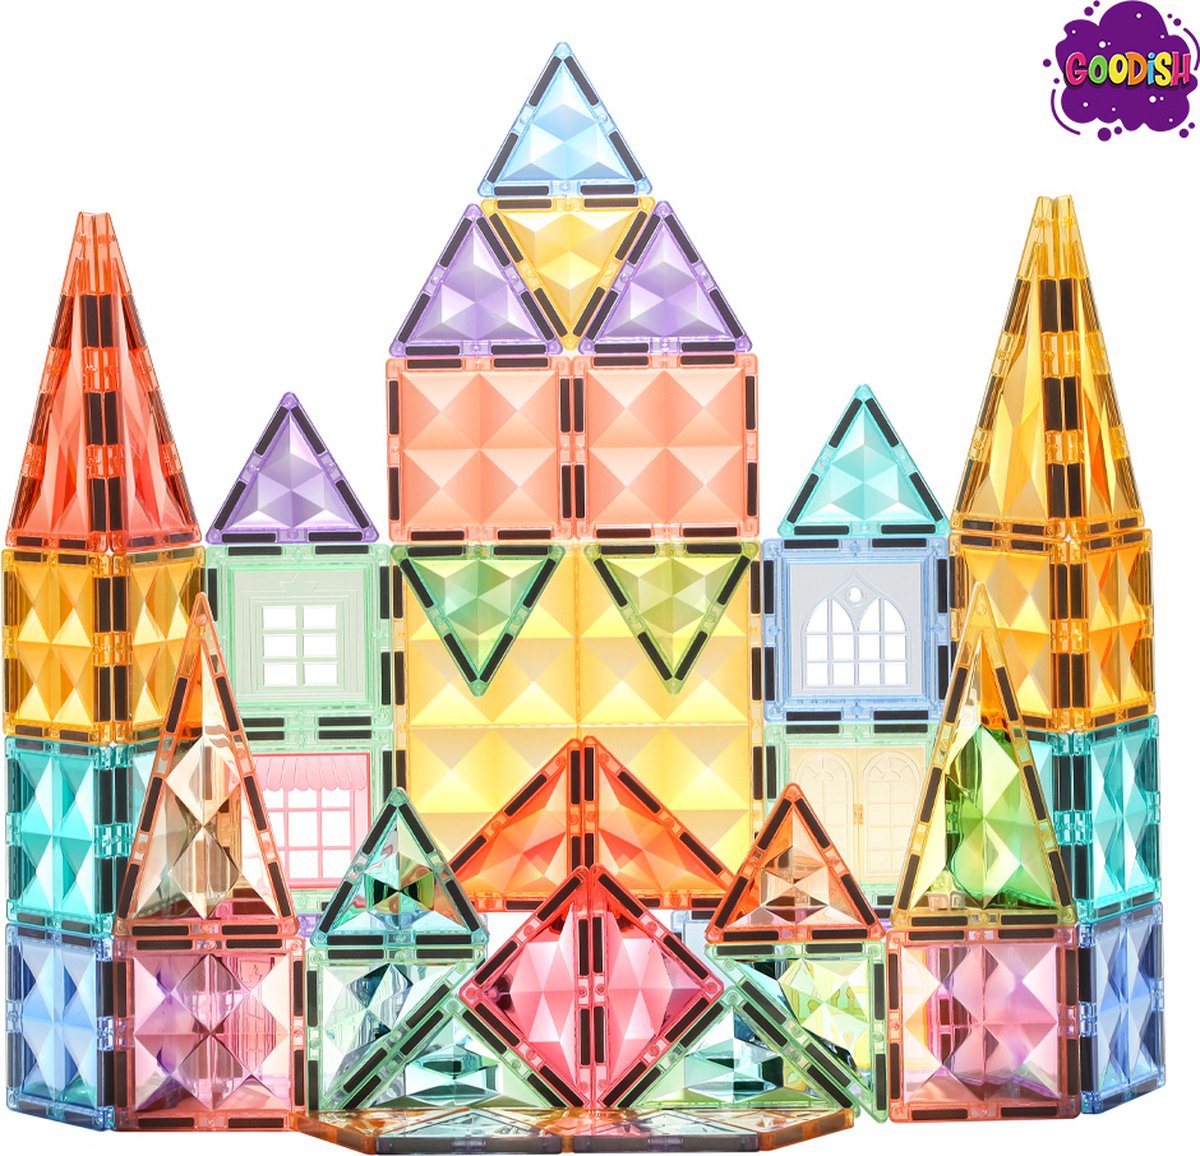 Magnetisch speelgoed | Goodish | 70 stuks | Cadeau | Bouwspeelgoed | Kinderen | Magnetisch bouwspeelgoed | Montessori speelgoed | Magnetic tiles |